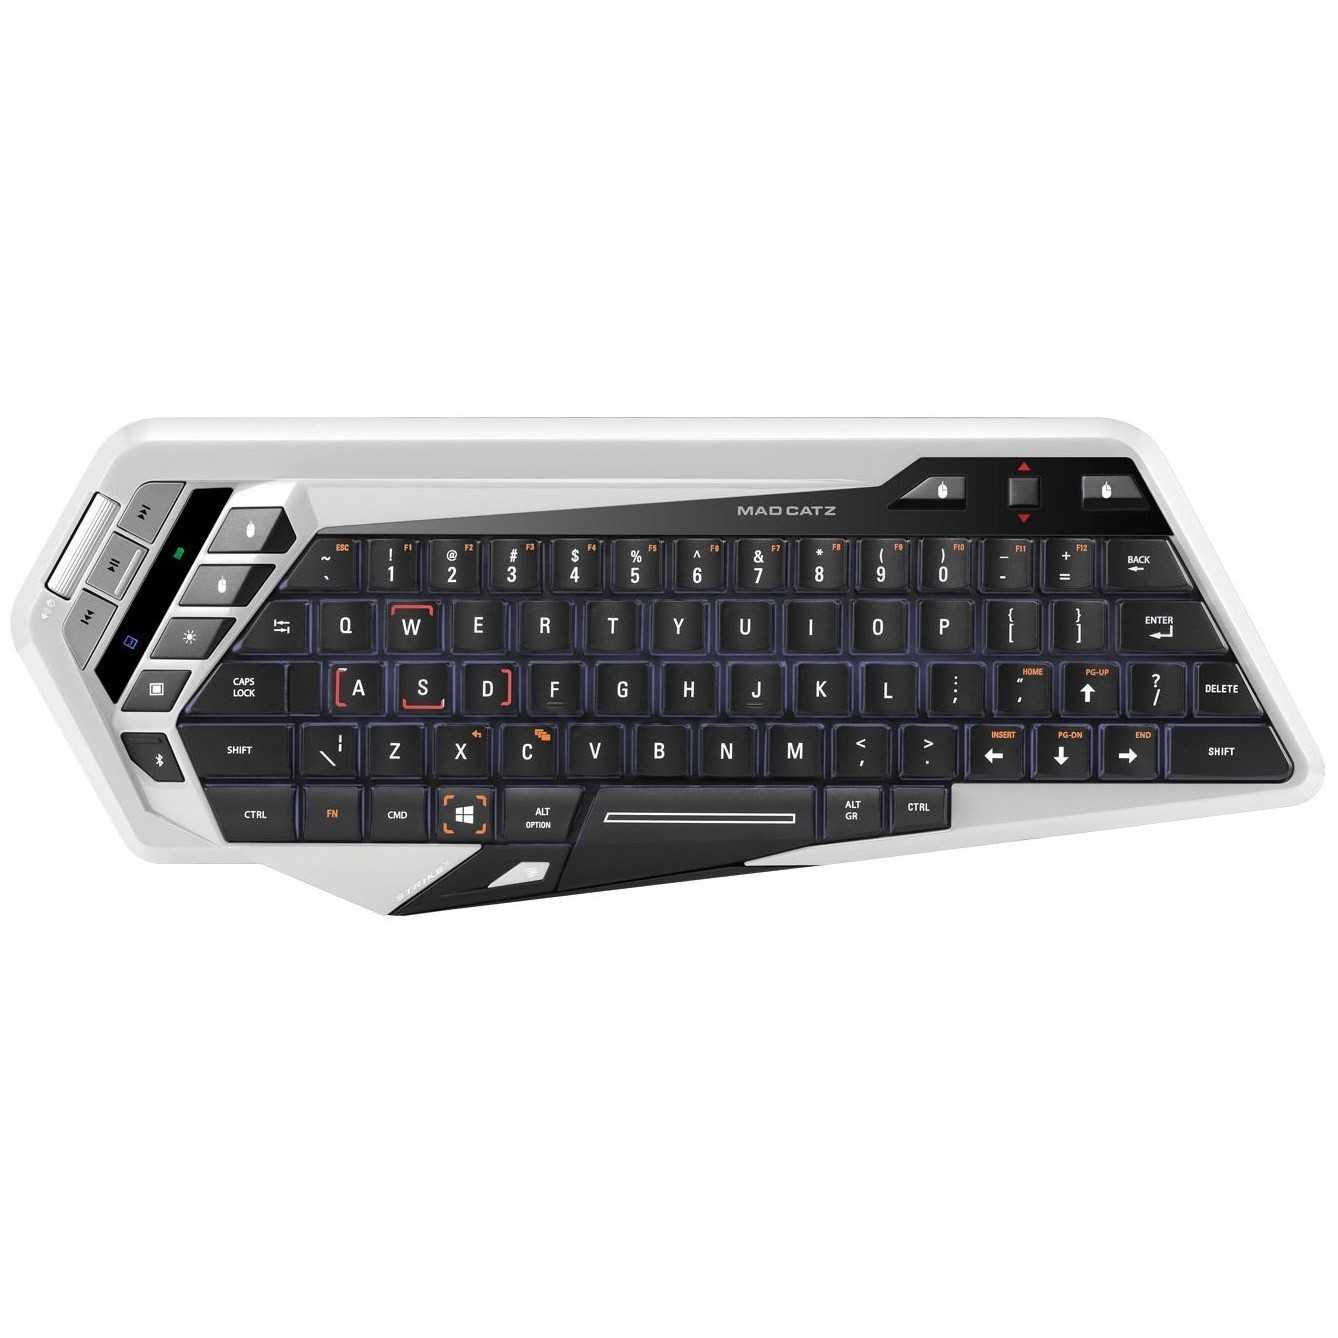 Игровая клавиатура mad catz s.t.r.i.k.e.7 — купить, цена и характеристики, отзывы